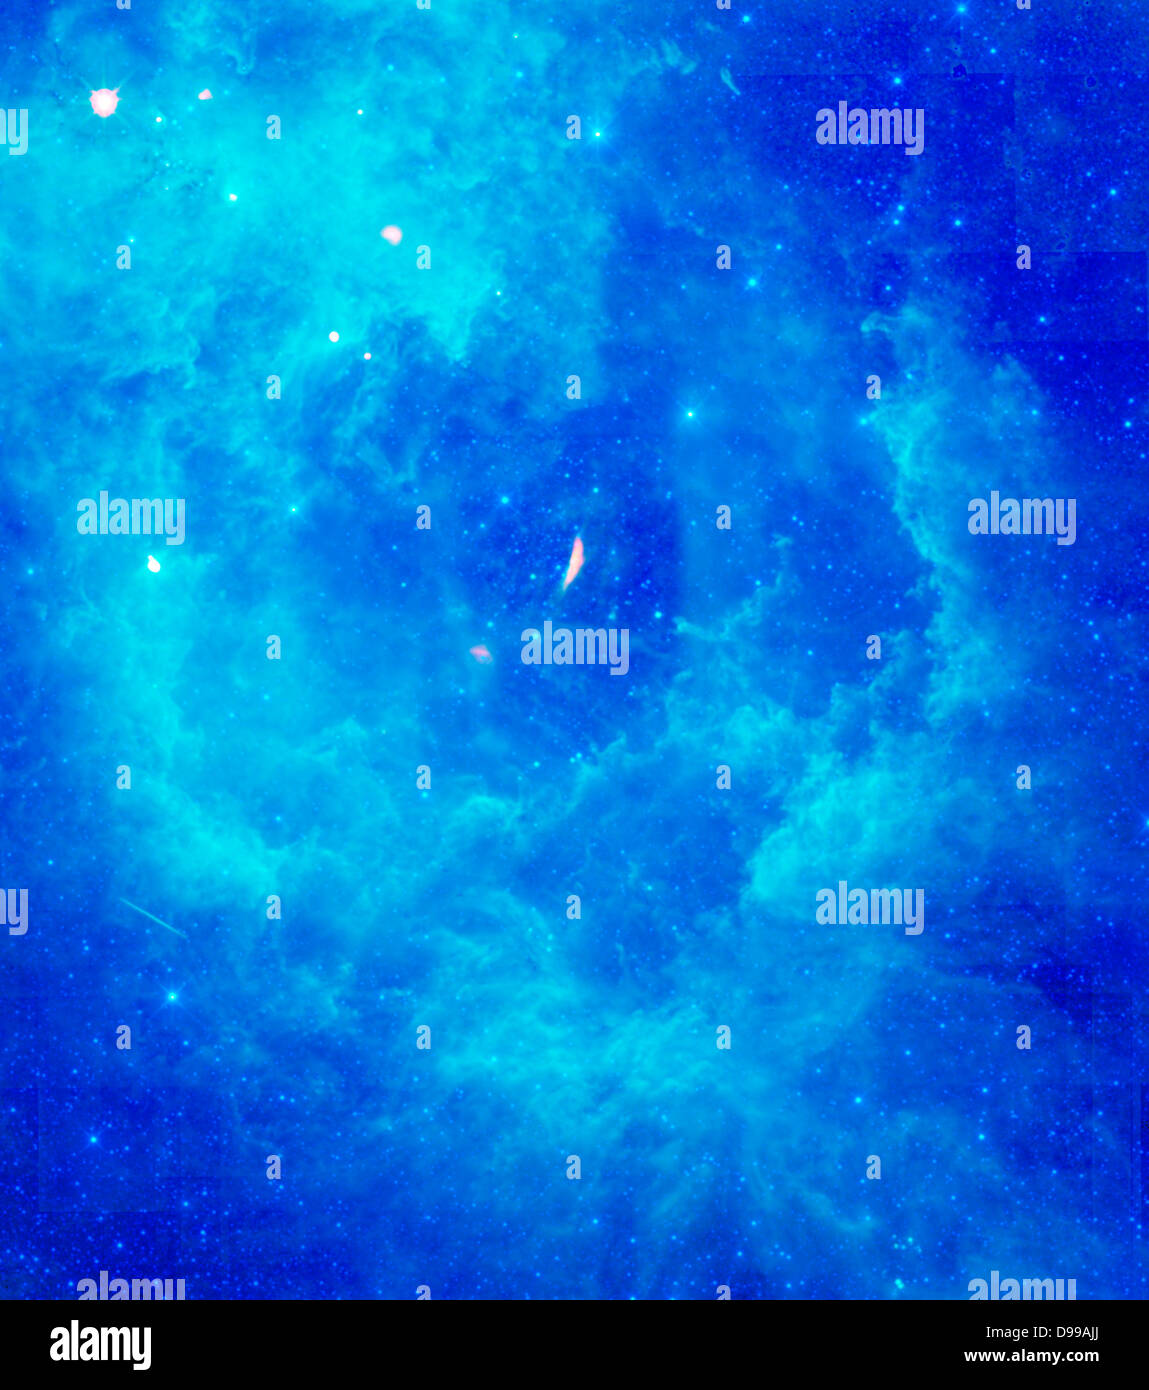 Die NASA-Weise zeigt die Rosette Nebel im Sternbild Camelopardalis, oder das Einhorn. Dieser Nebel, auch bekannt als NGC2237, ist ein riesiger Sterne bilden Wolke aus Staub und Gas in unserer Milchstraße. Schätzungen der Abstand des Nebels variieren von 4.500 bis 5.000 Lichtjahre entfernt. Stockfoto